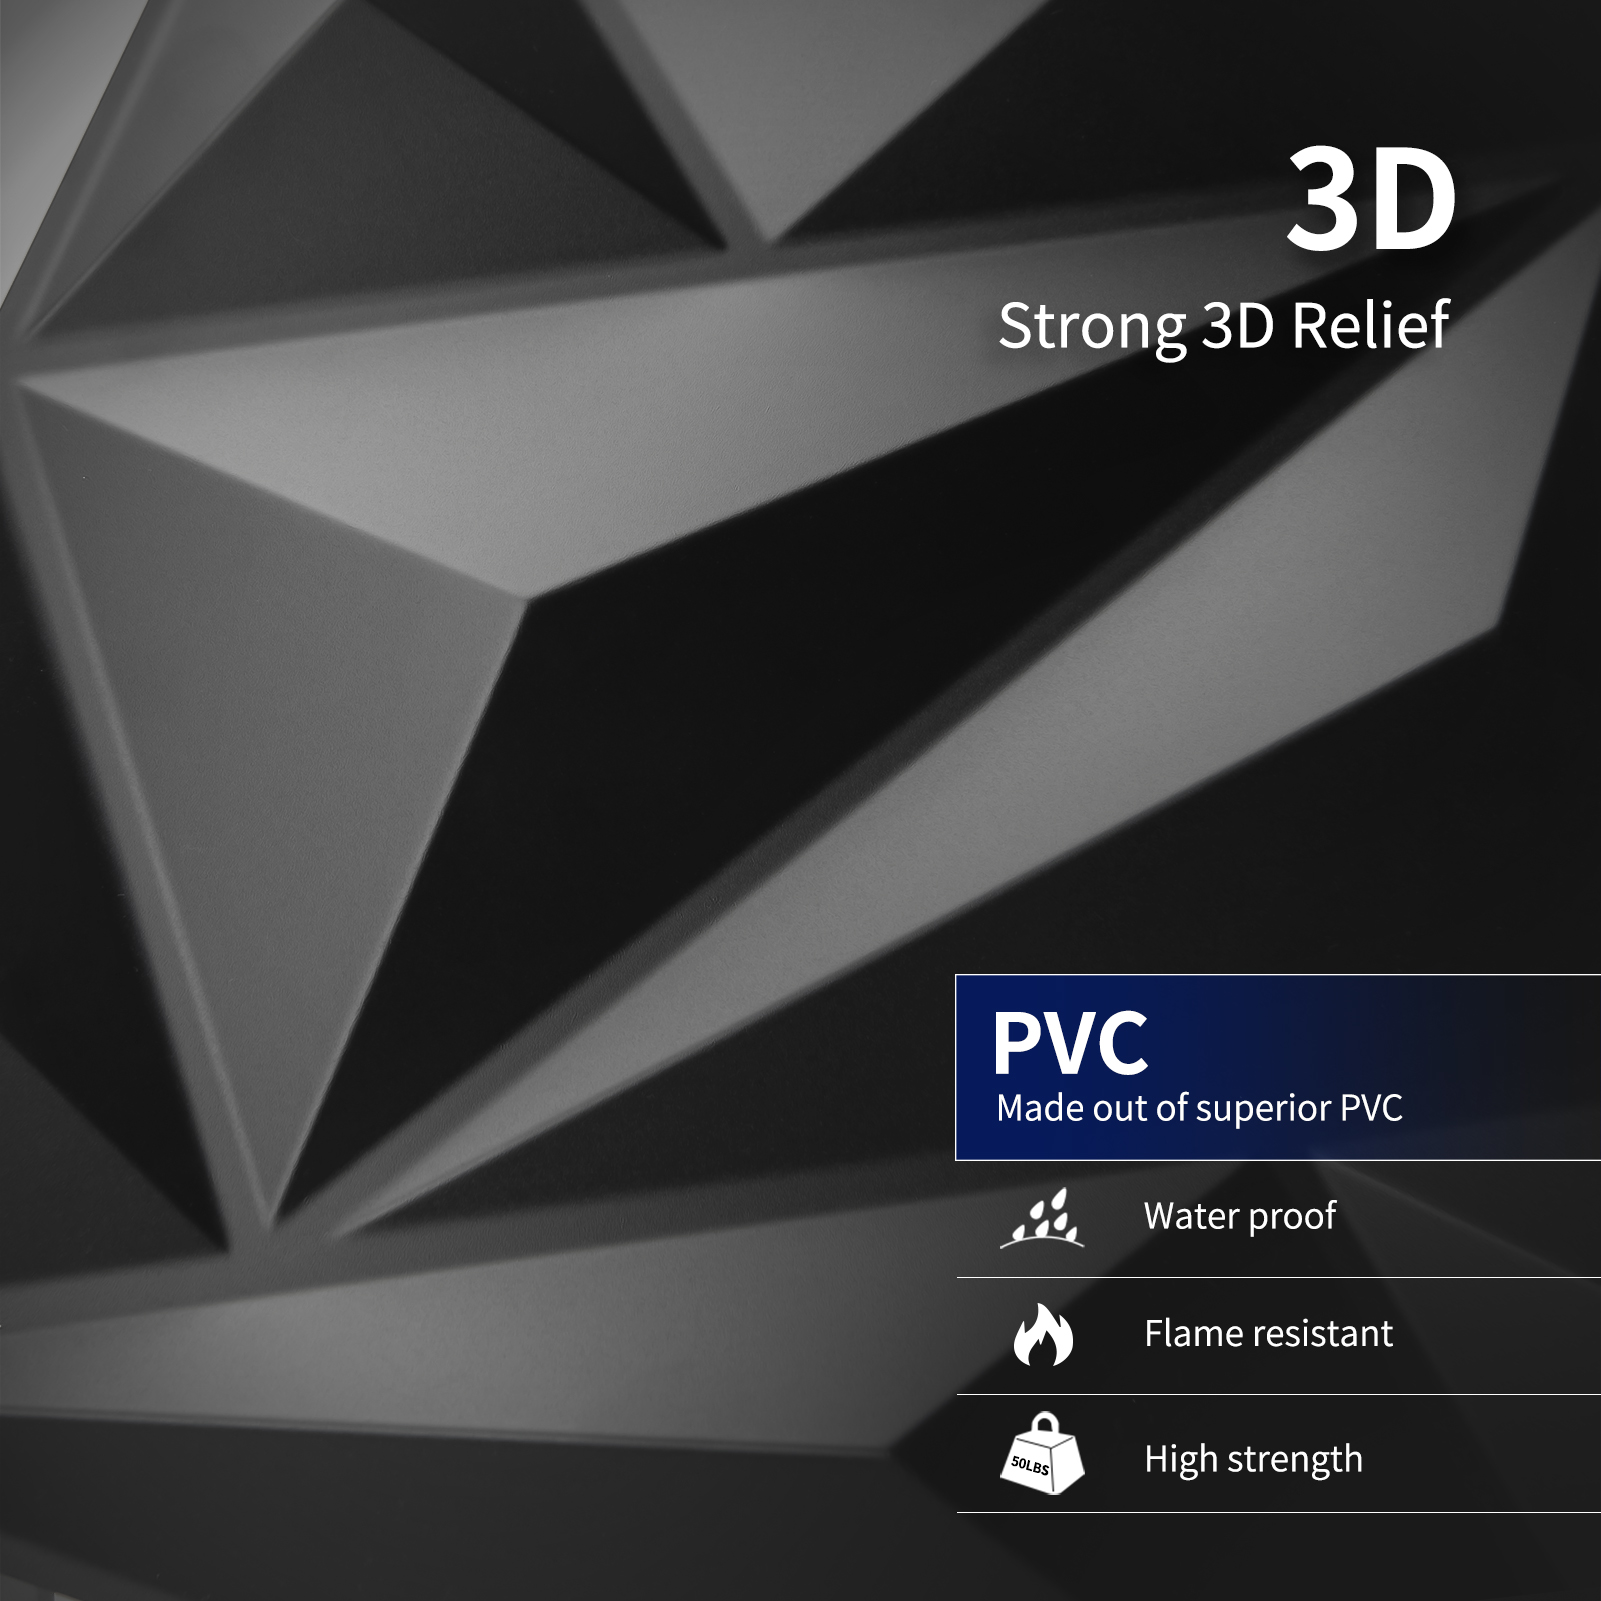 Art3d white 3D PVC Wall Panels in Diamond Design, 12x12 (33 Pack)